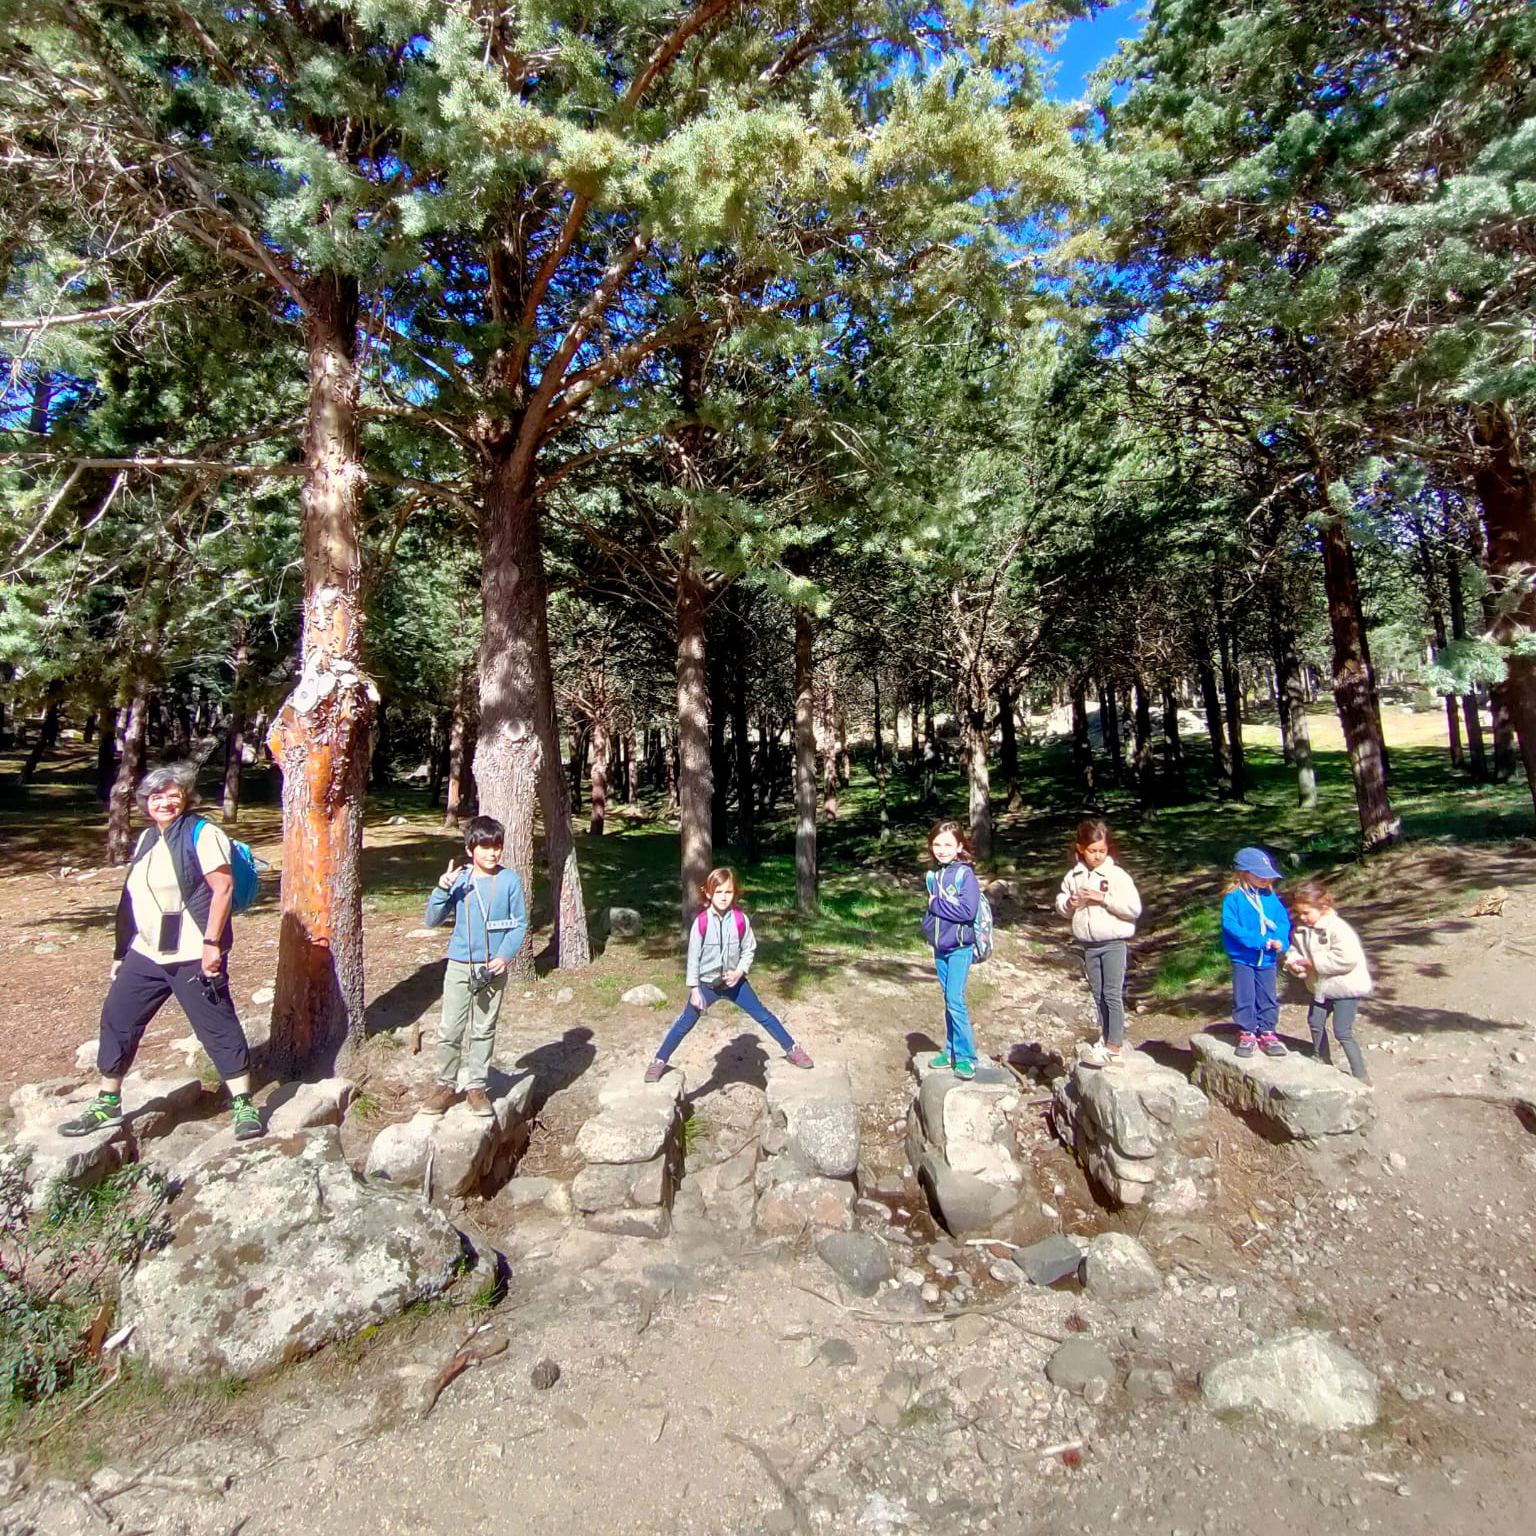 Vista general de un grupo de personas adultas y menores posando sobre rocas en un bosque.